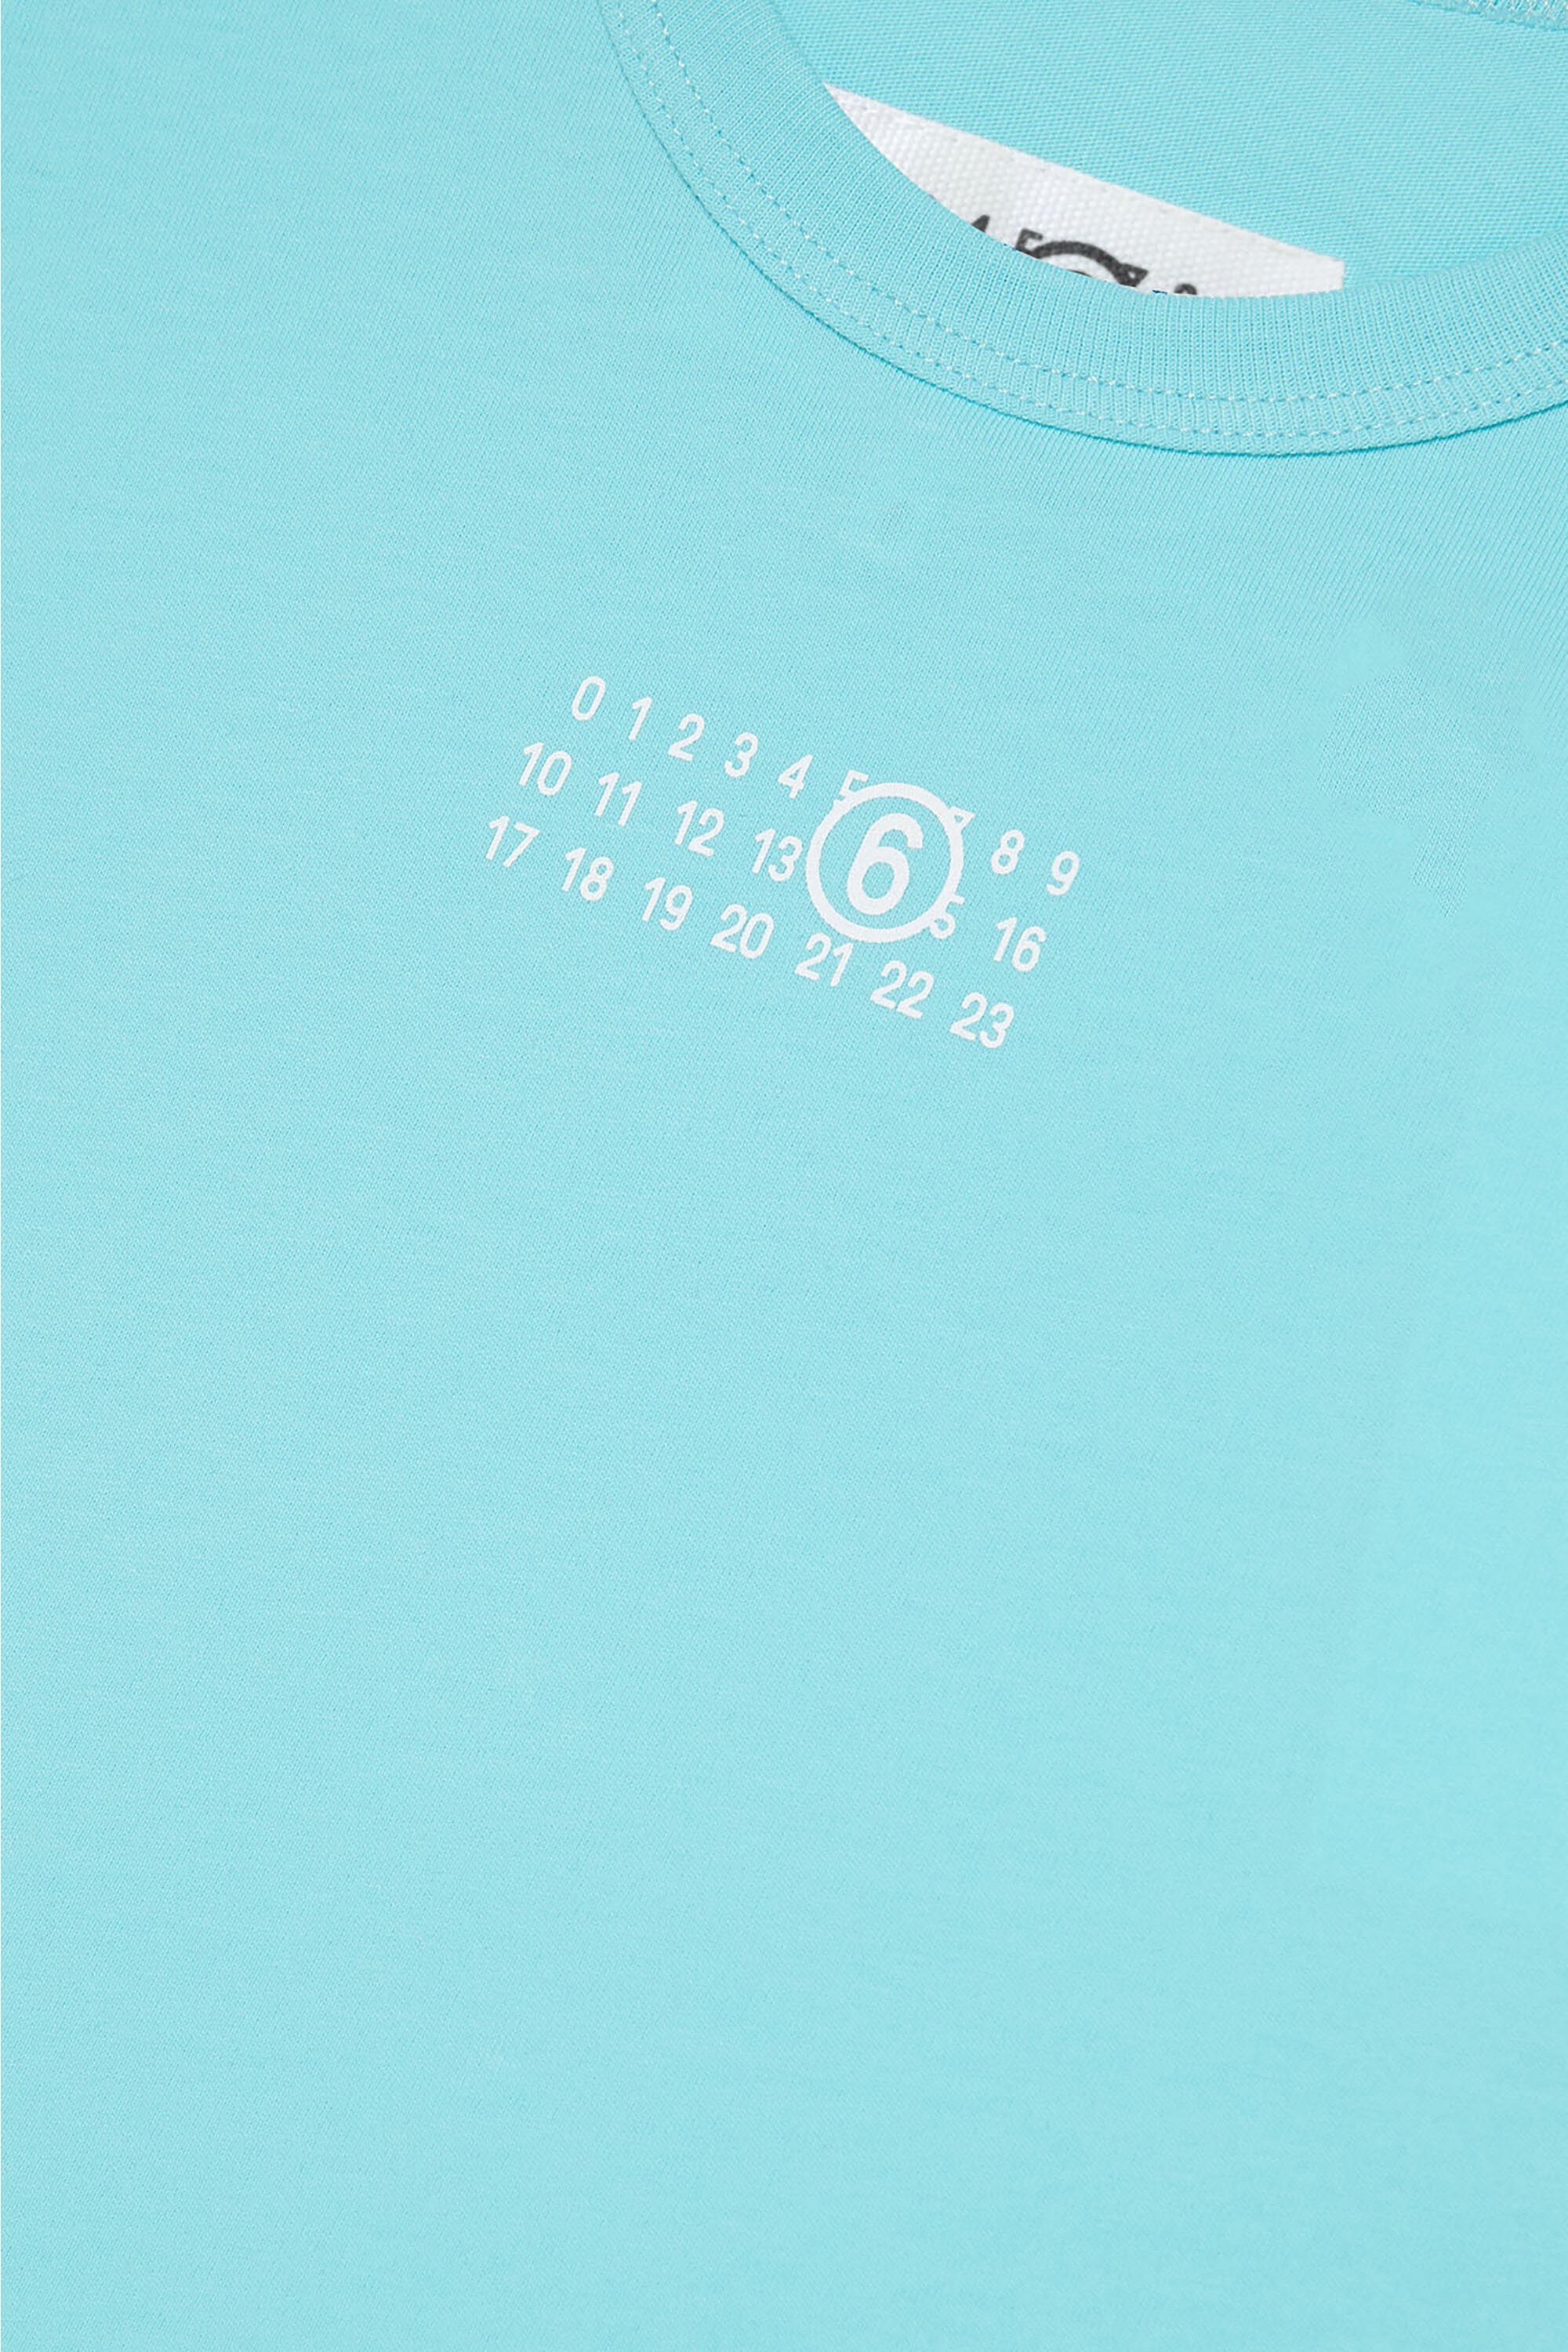 ノースリーブTシャツに数字のロゴがブランドロゴとしてあしらわれている。